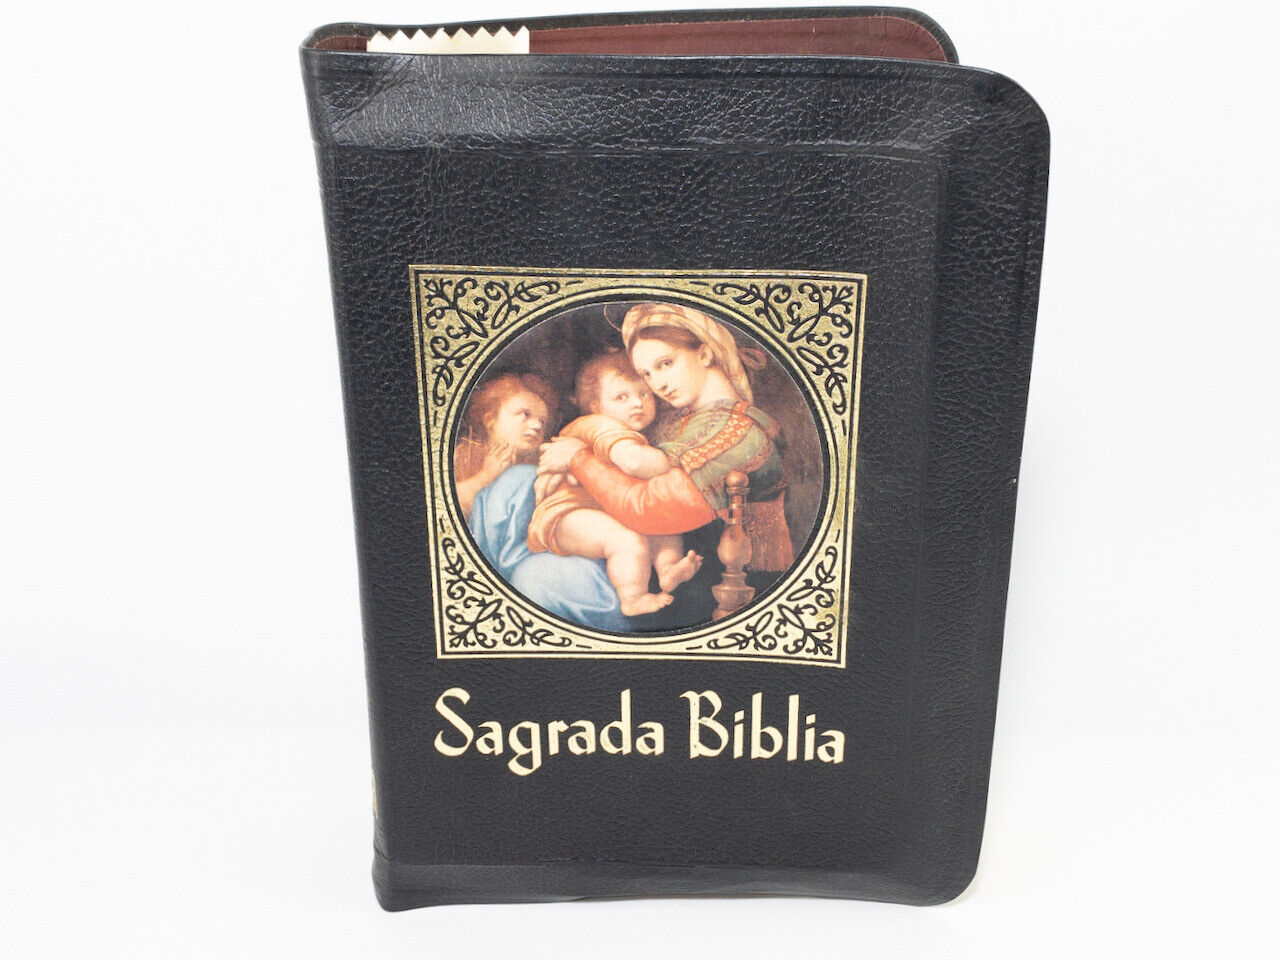 Sagrada Biblia - La Prensa Catolica 1968, Los Textos Primitivos, Spanish Version